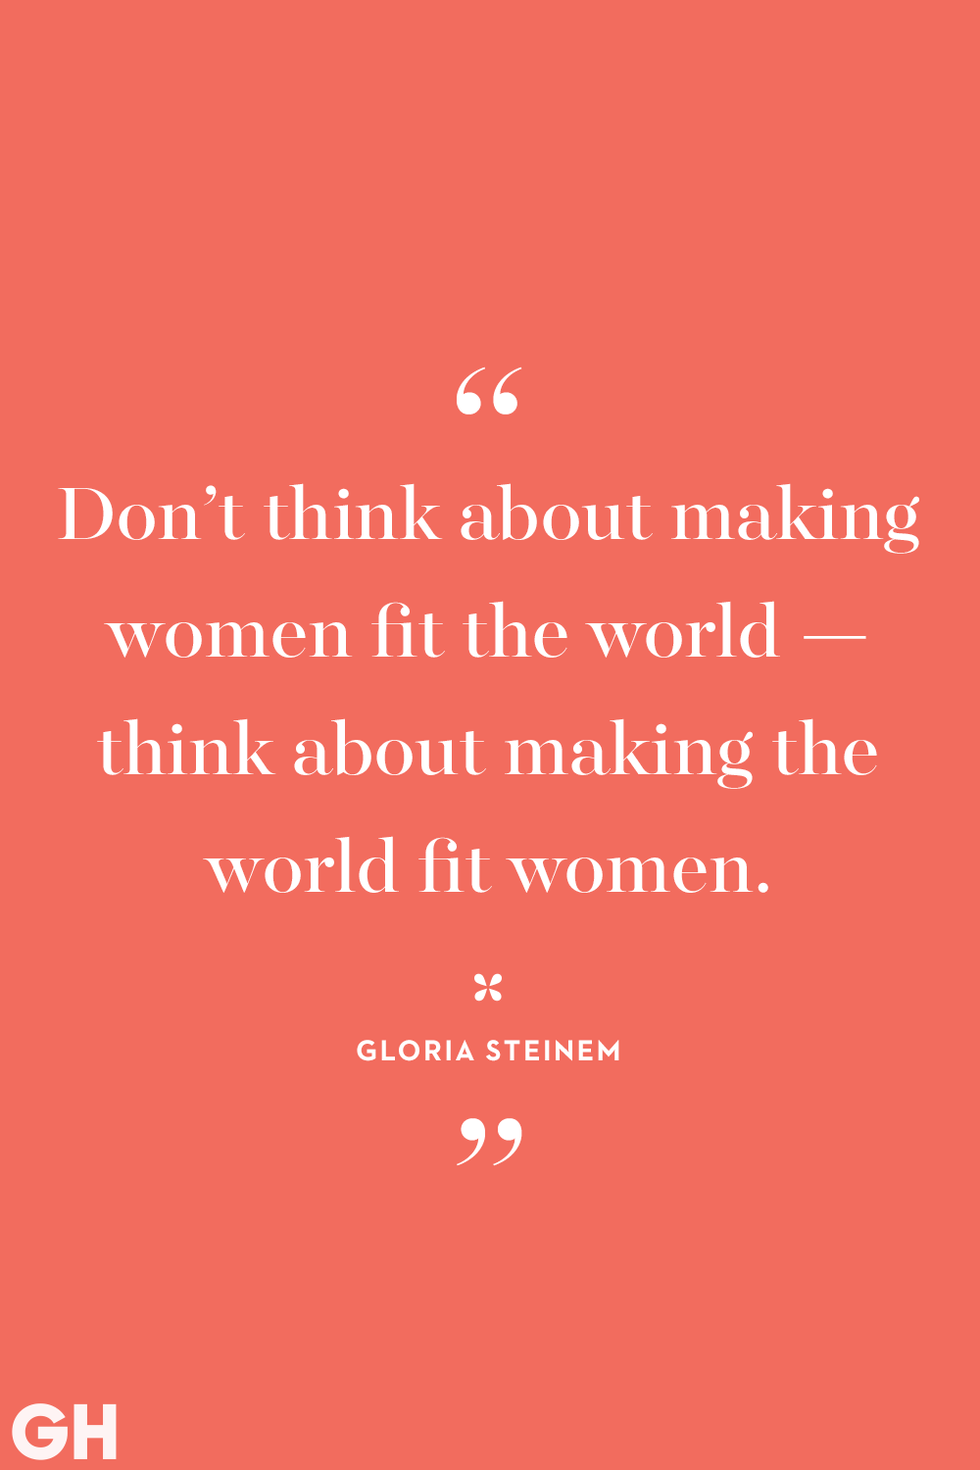 Gloria Steinem - Quotes, Movie & Life